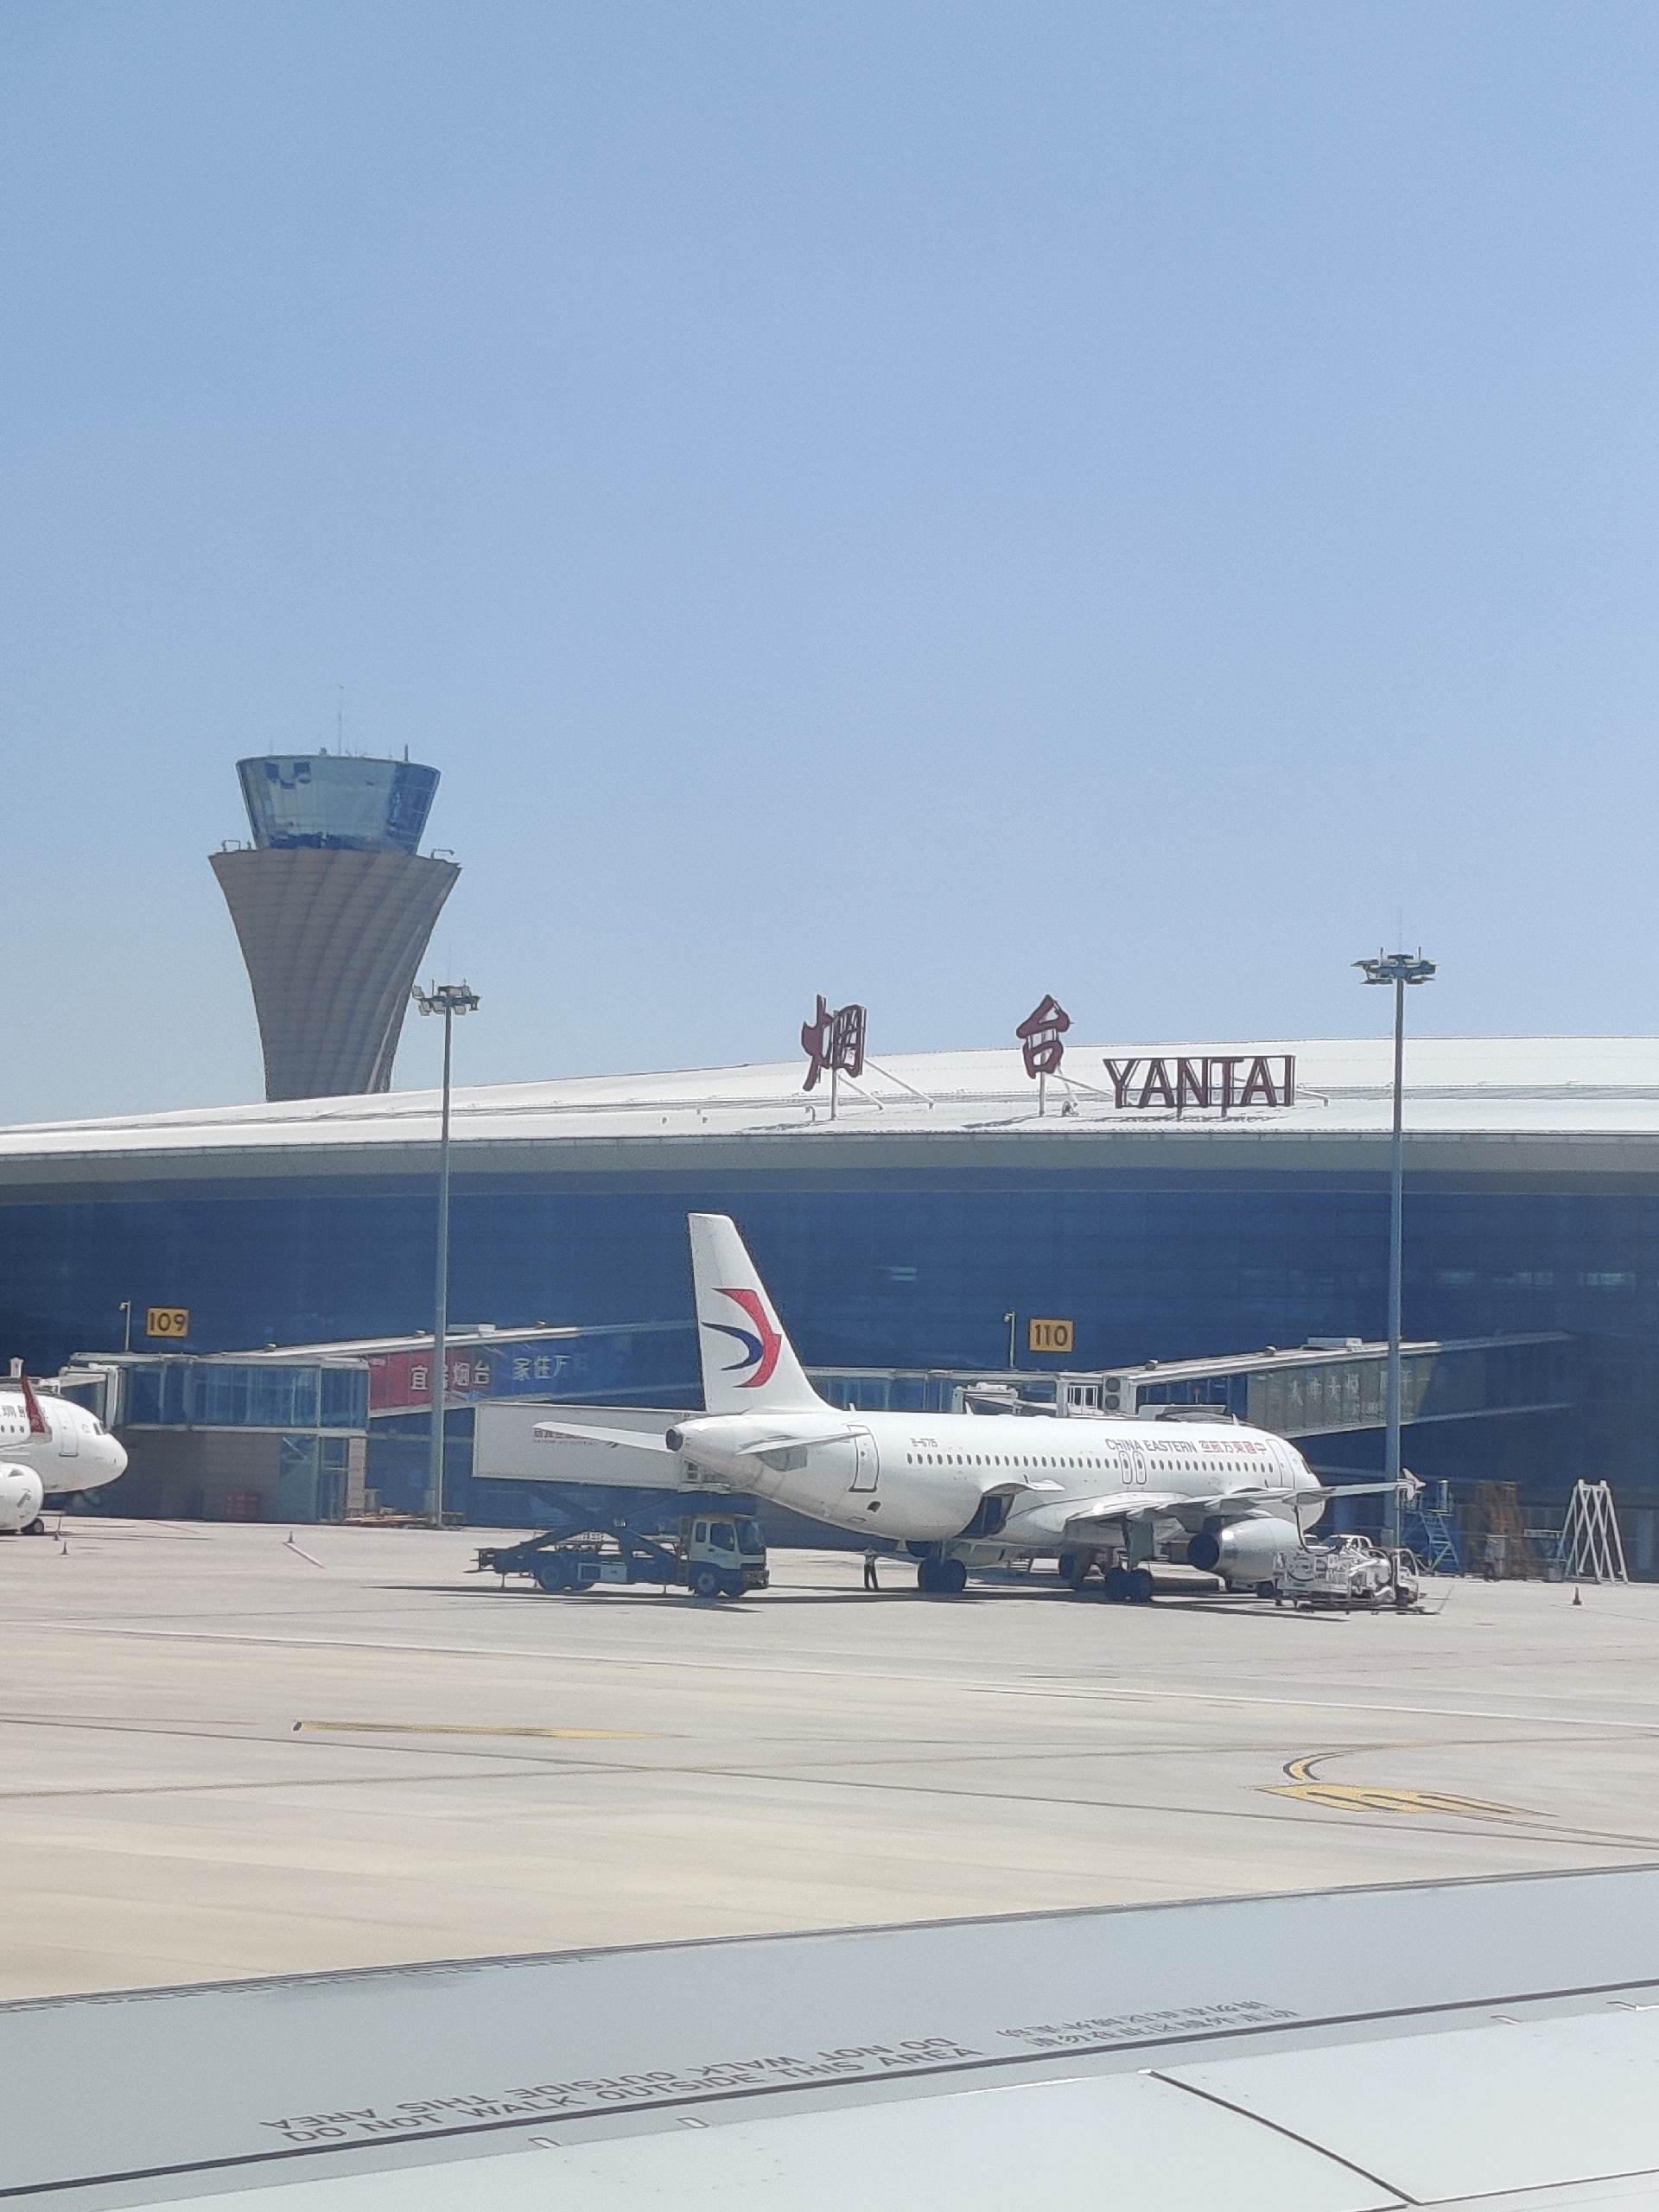 烟台蓬莱国际机场自助游图片,烟台蓬莱国际机场旅游景点照片 